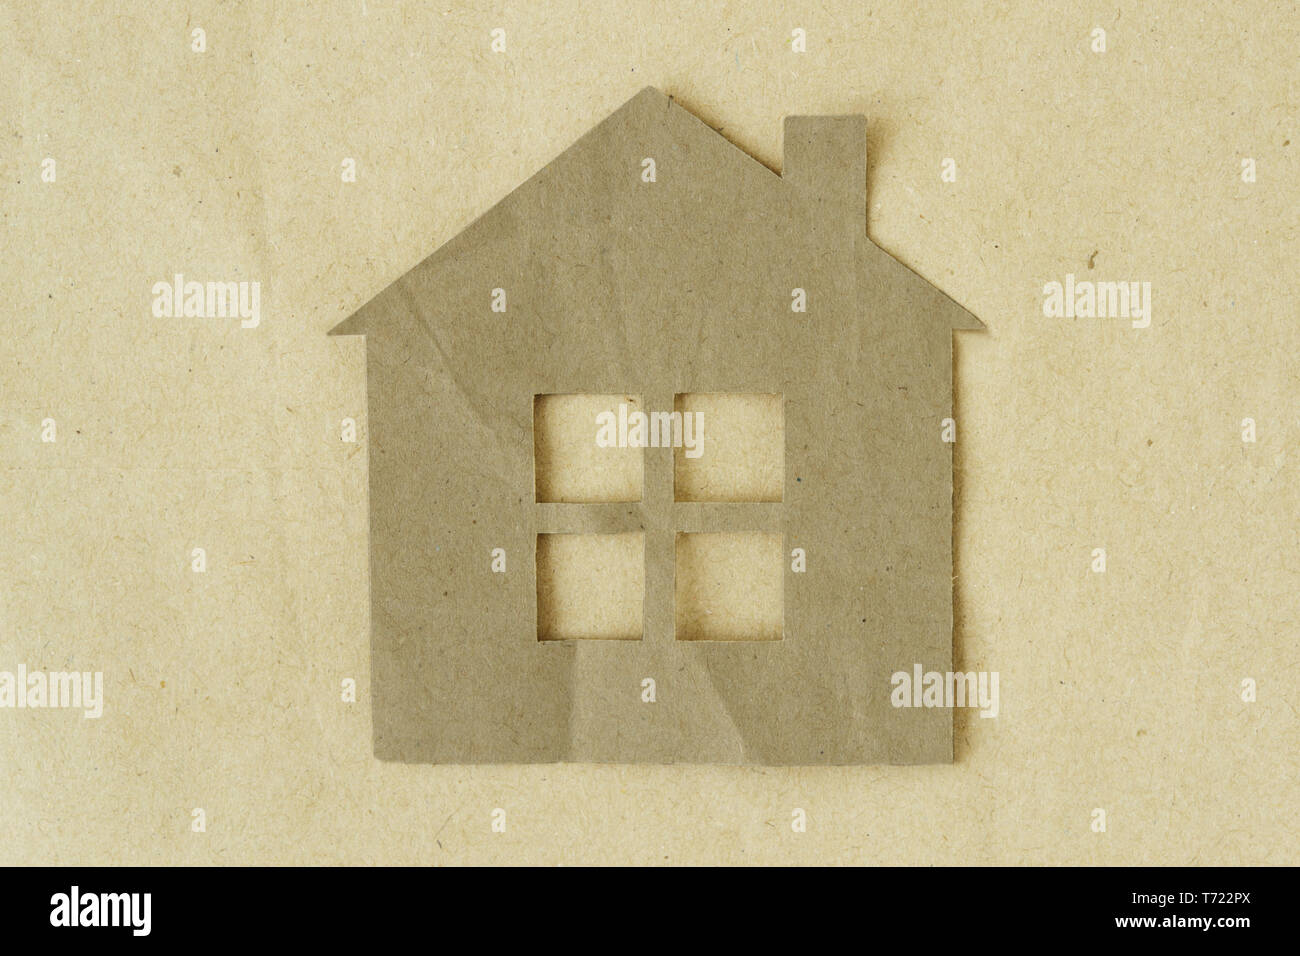 Carta tagliata della casa su carta riciclata in background - Eco-house concept Foto Stock